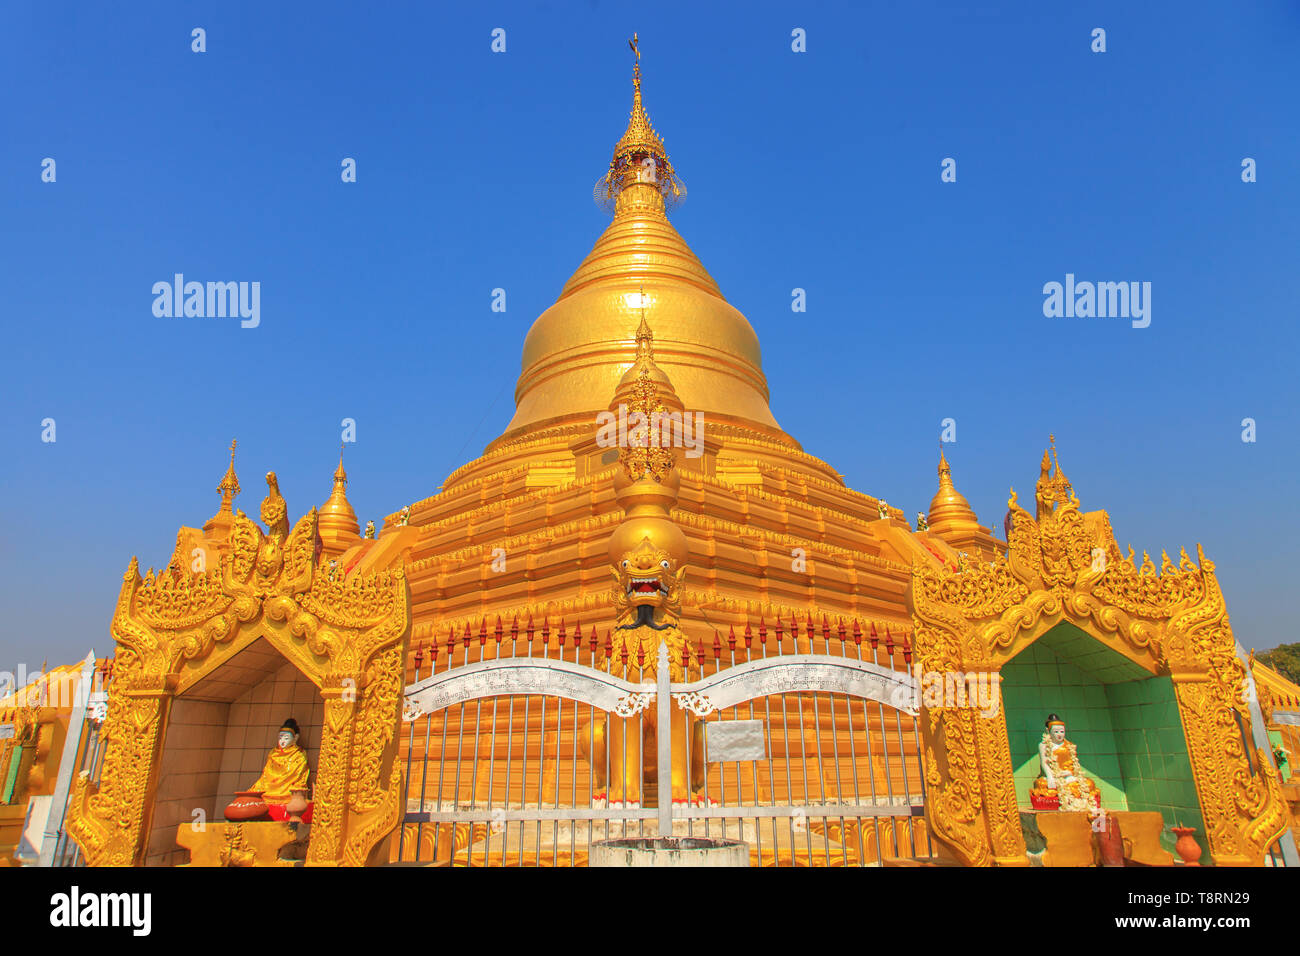 The Kuthodaw Pagoda in Mandalay Stock Photo